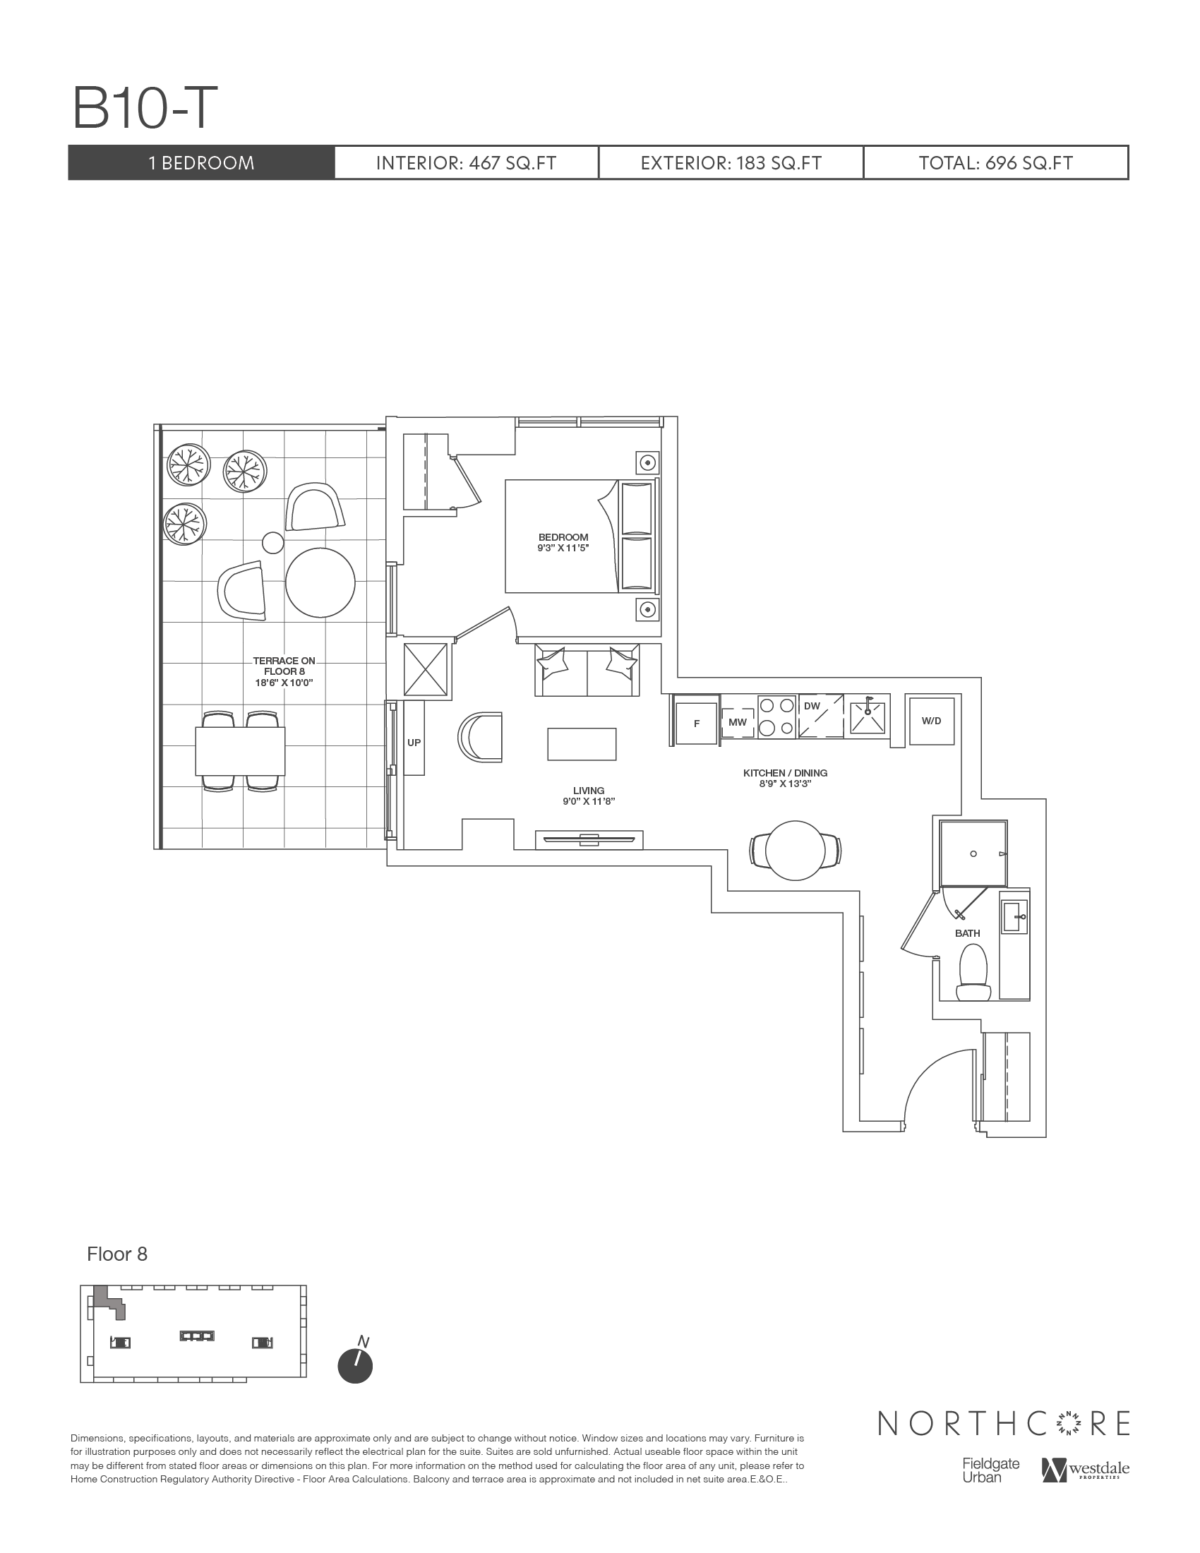 B10-T floorplan